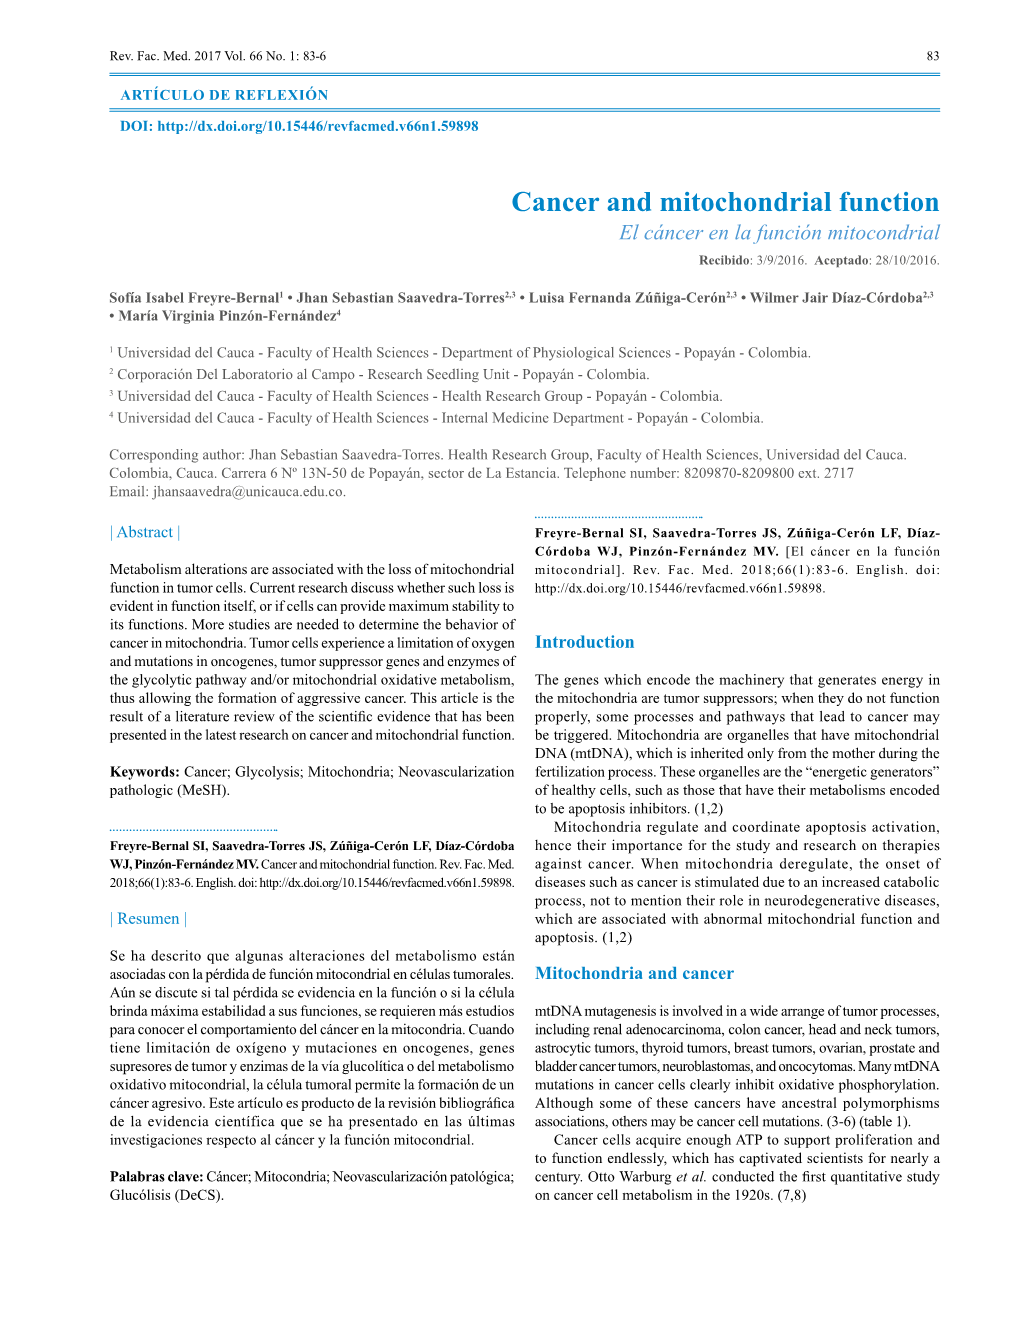 Cancer and Mitochondrial Function El Cáncer En La Función Mitocondrial Recibido: 3/9/2016